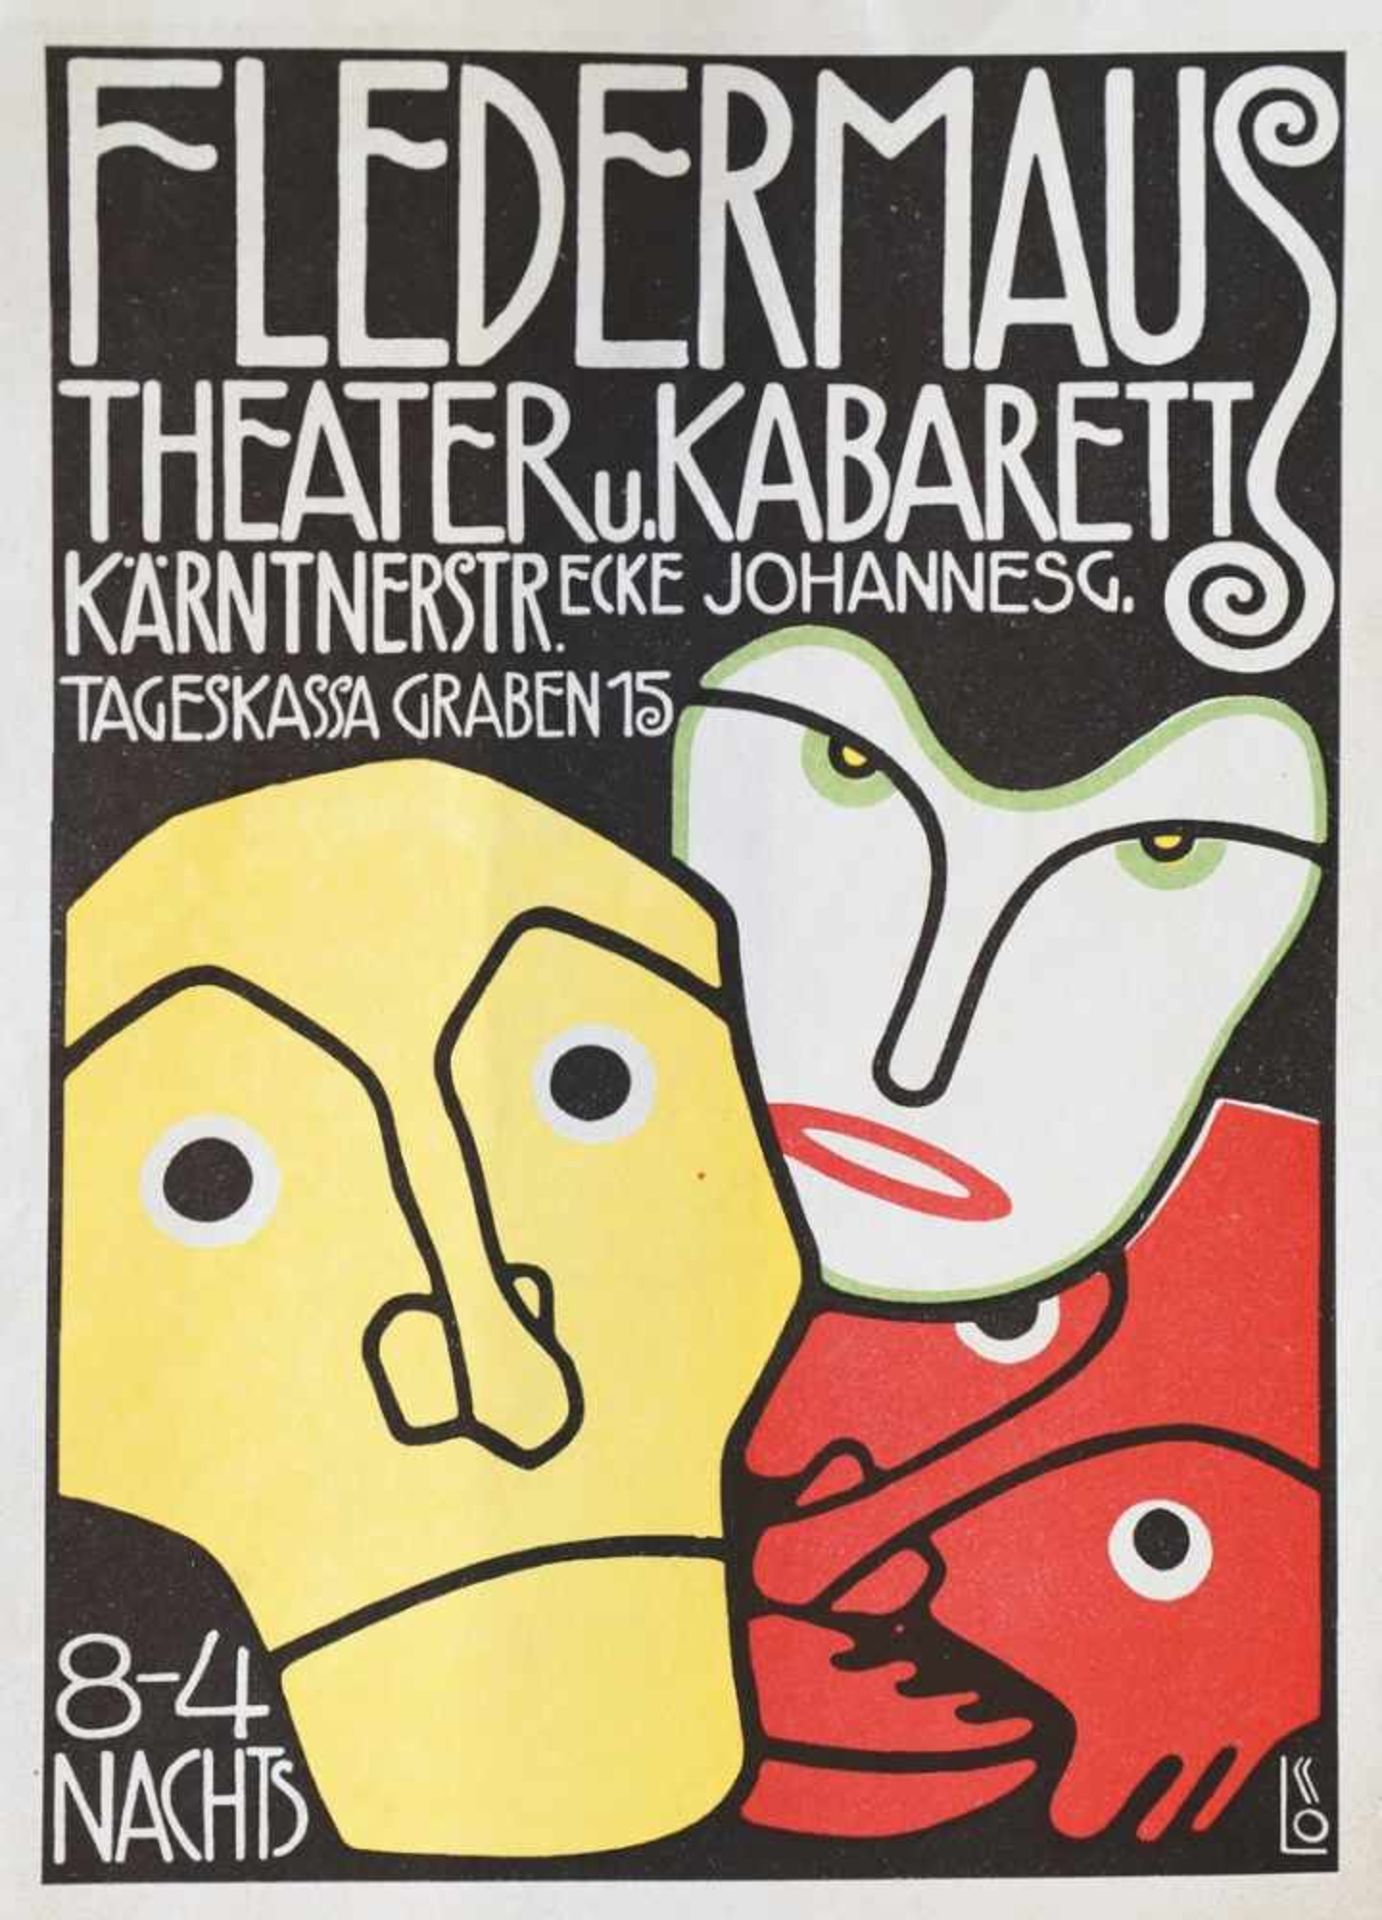 Bertold Löffler, (1874-1960)Design 1907Plakat. Fledermaus, Theater u. Kabarett, Kärntner Str.